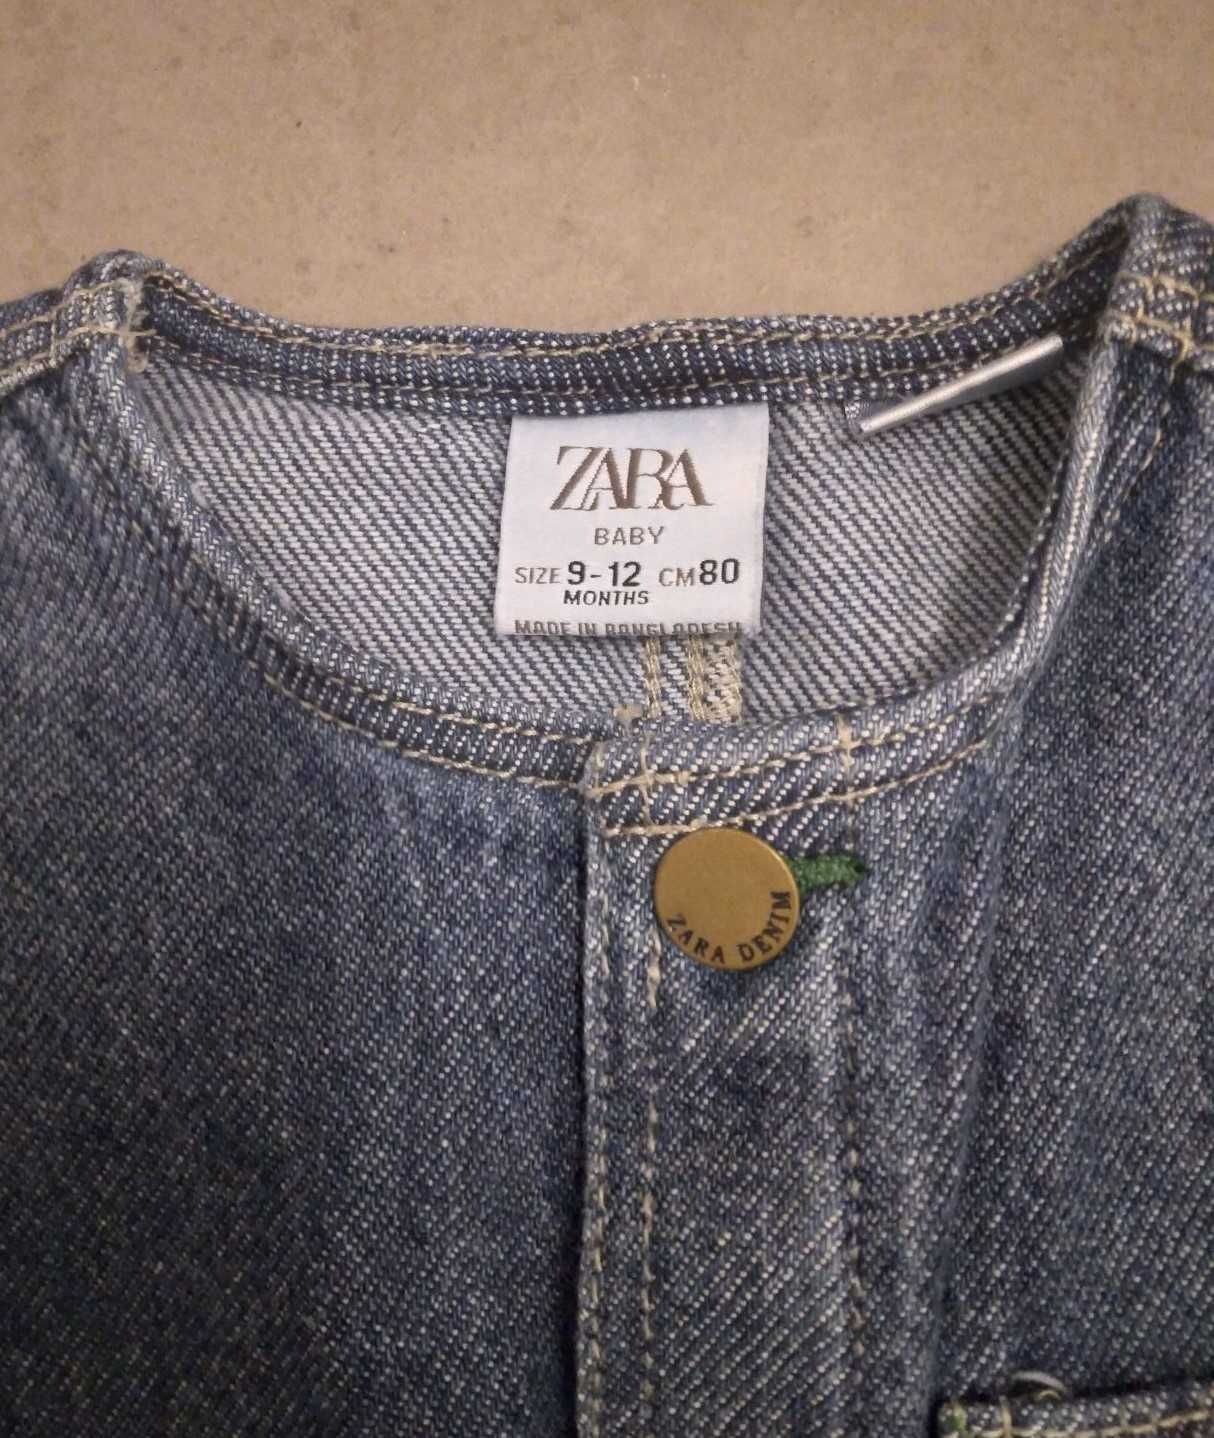 Jeansowy kombinezon firmy Zara dla chłopca w rozmiarze 80